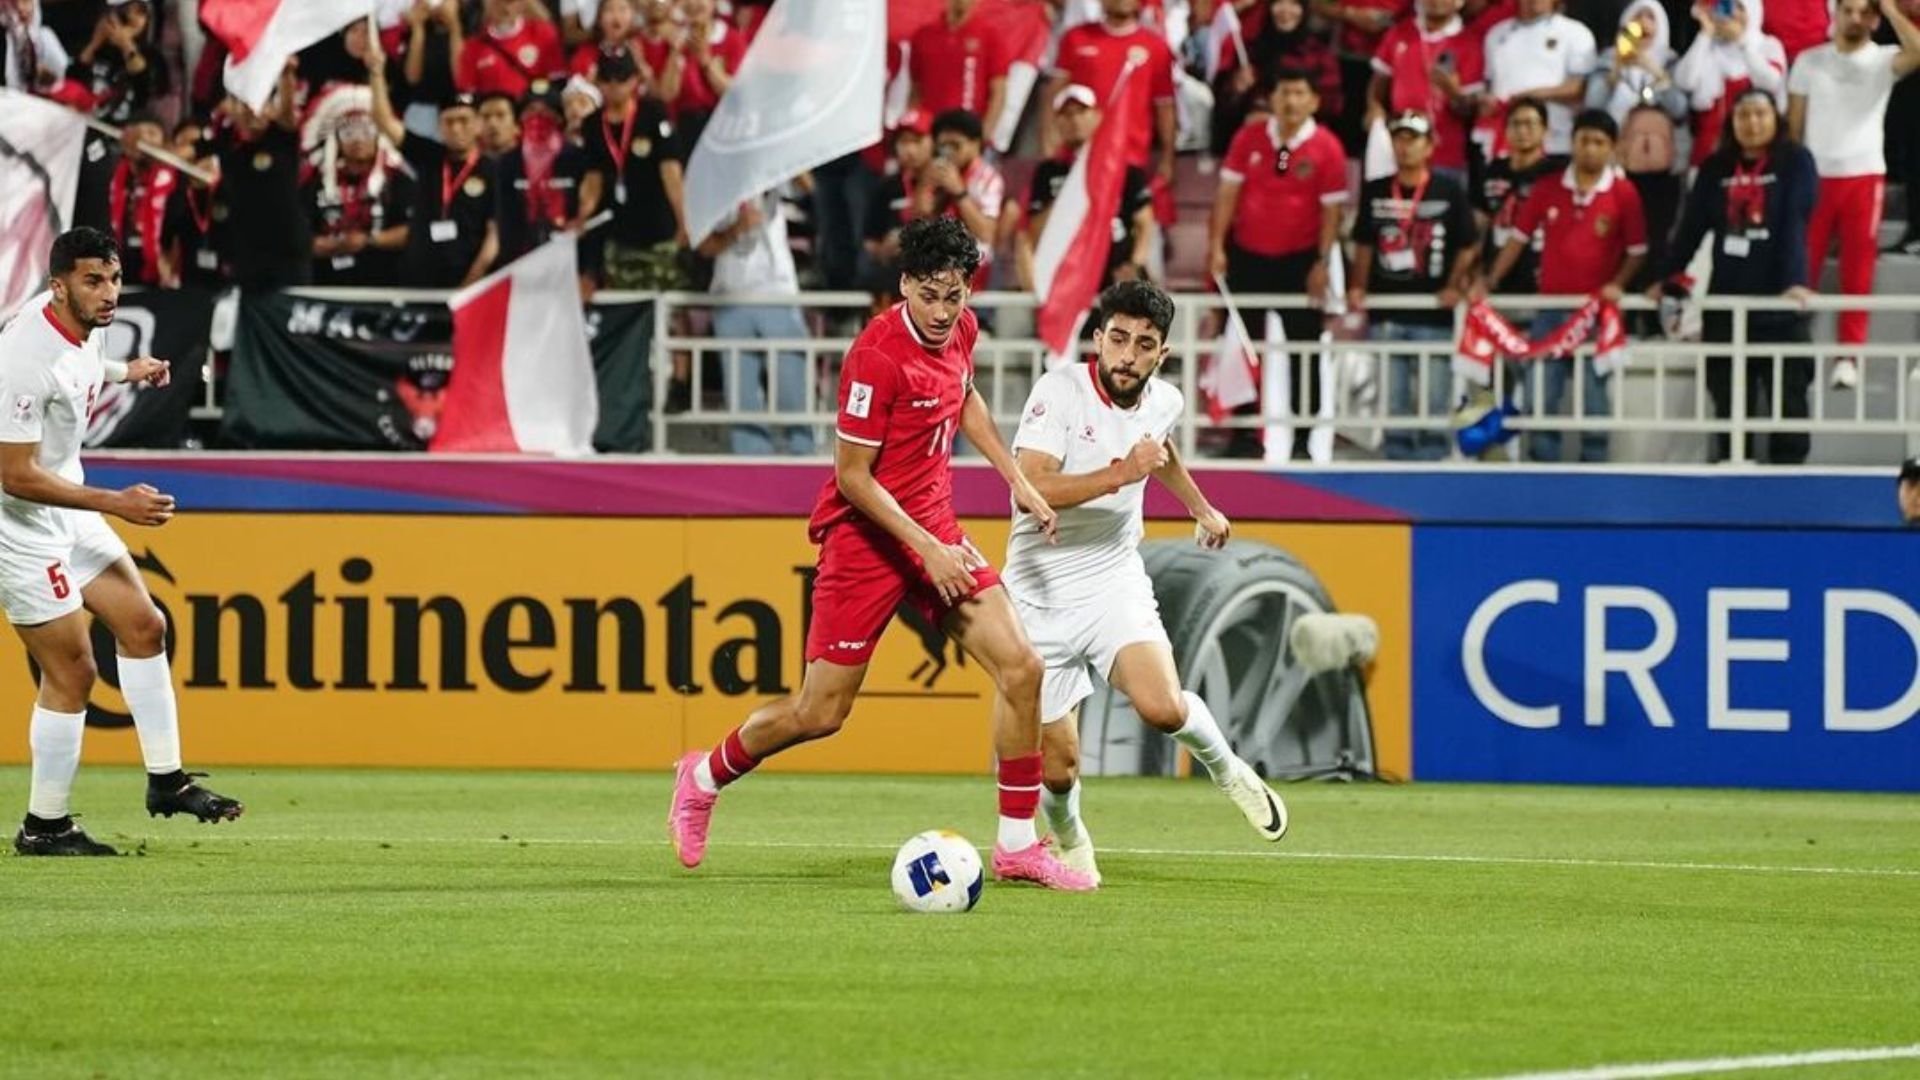 Rafael William Struick saat berlaga di Doha, Qatar untuk membela tim nasional Indonesia./ Instagram/ rafaelstruick